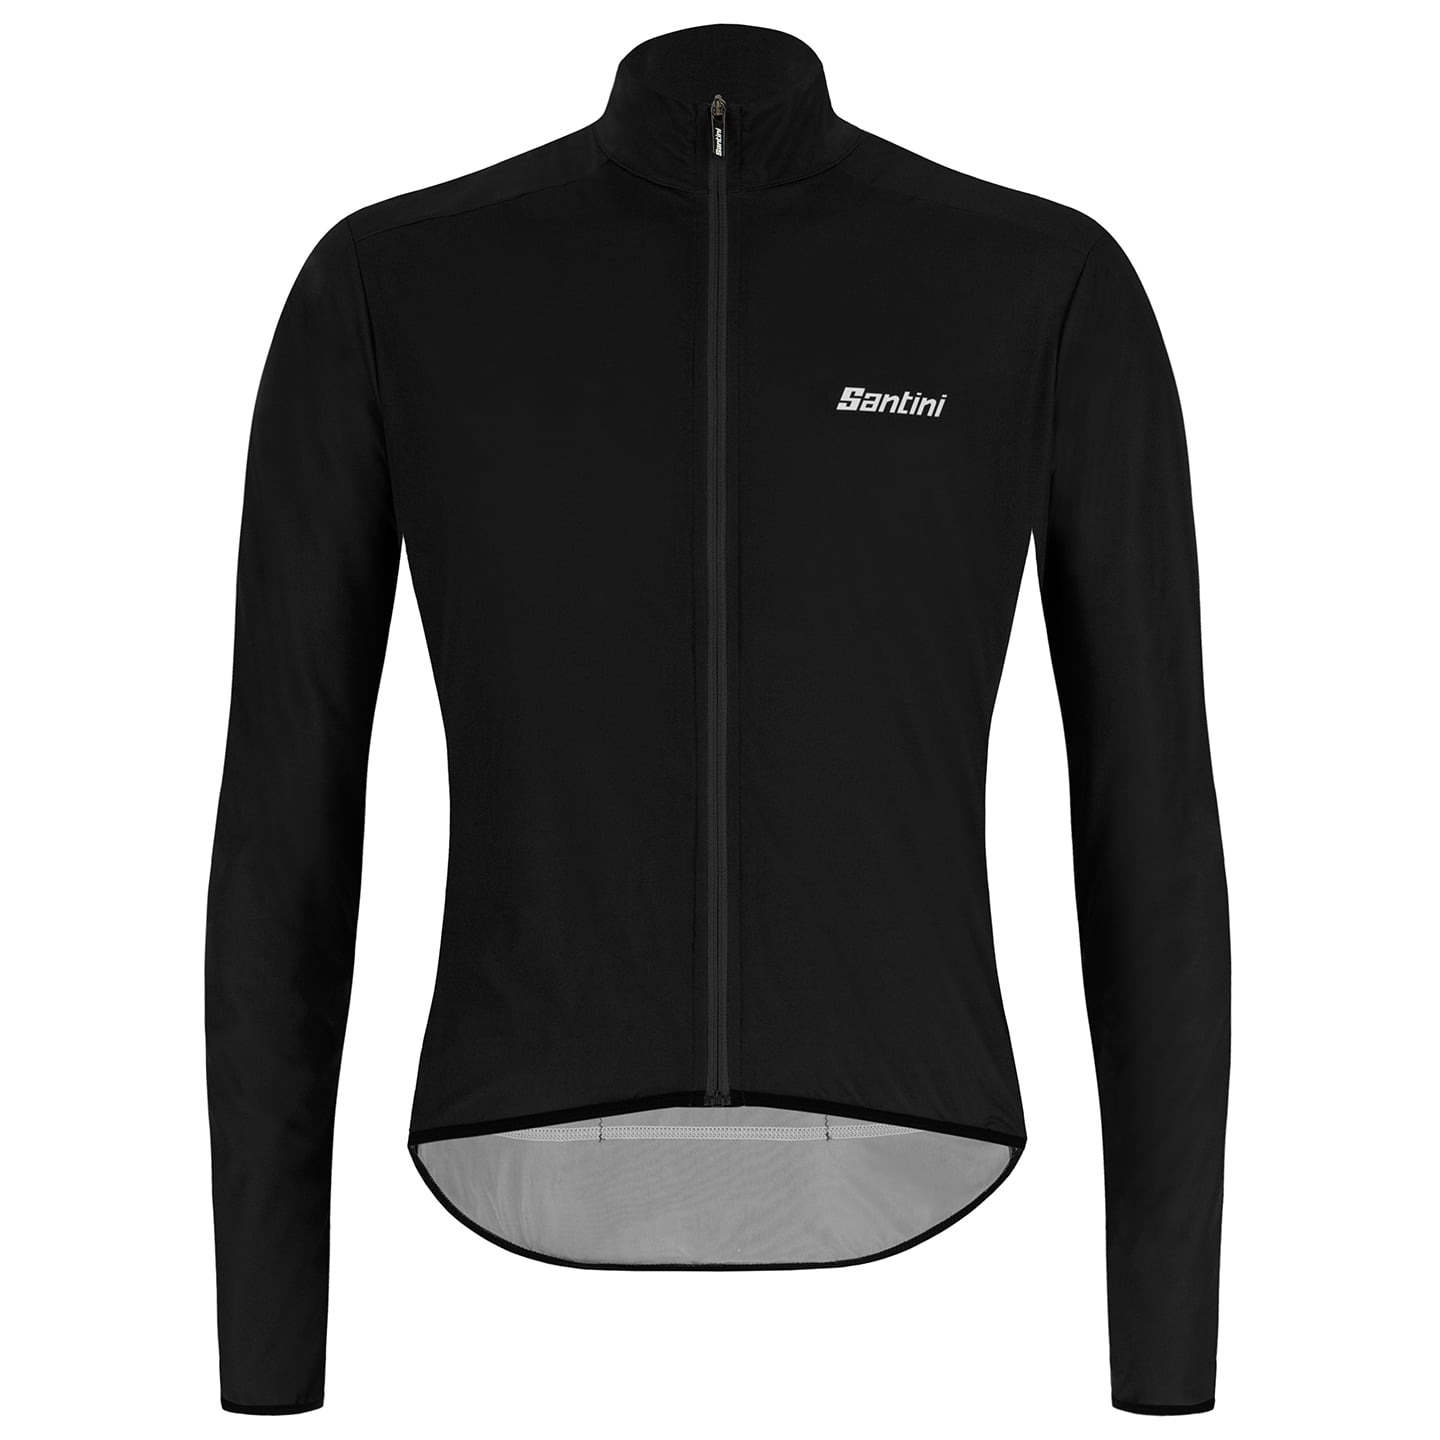 SANTINI Nebula Puro Wind Jacket Wind Jacket, for men, size 2XL, Cycle jacket, Cycling clothing